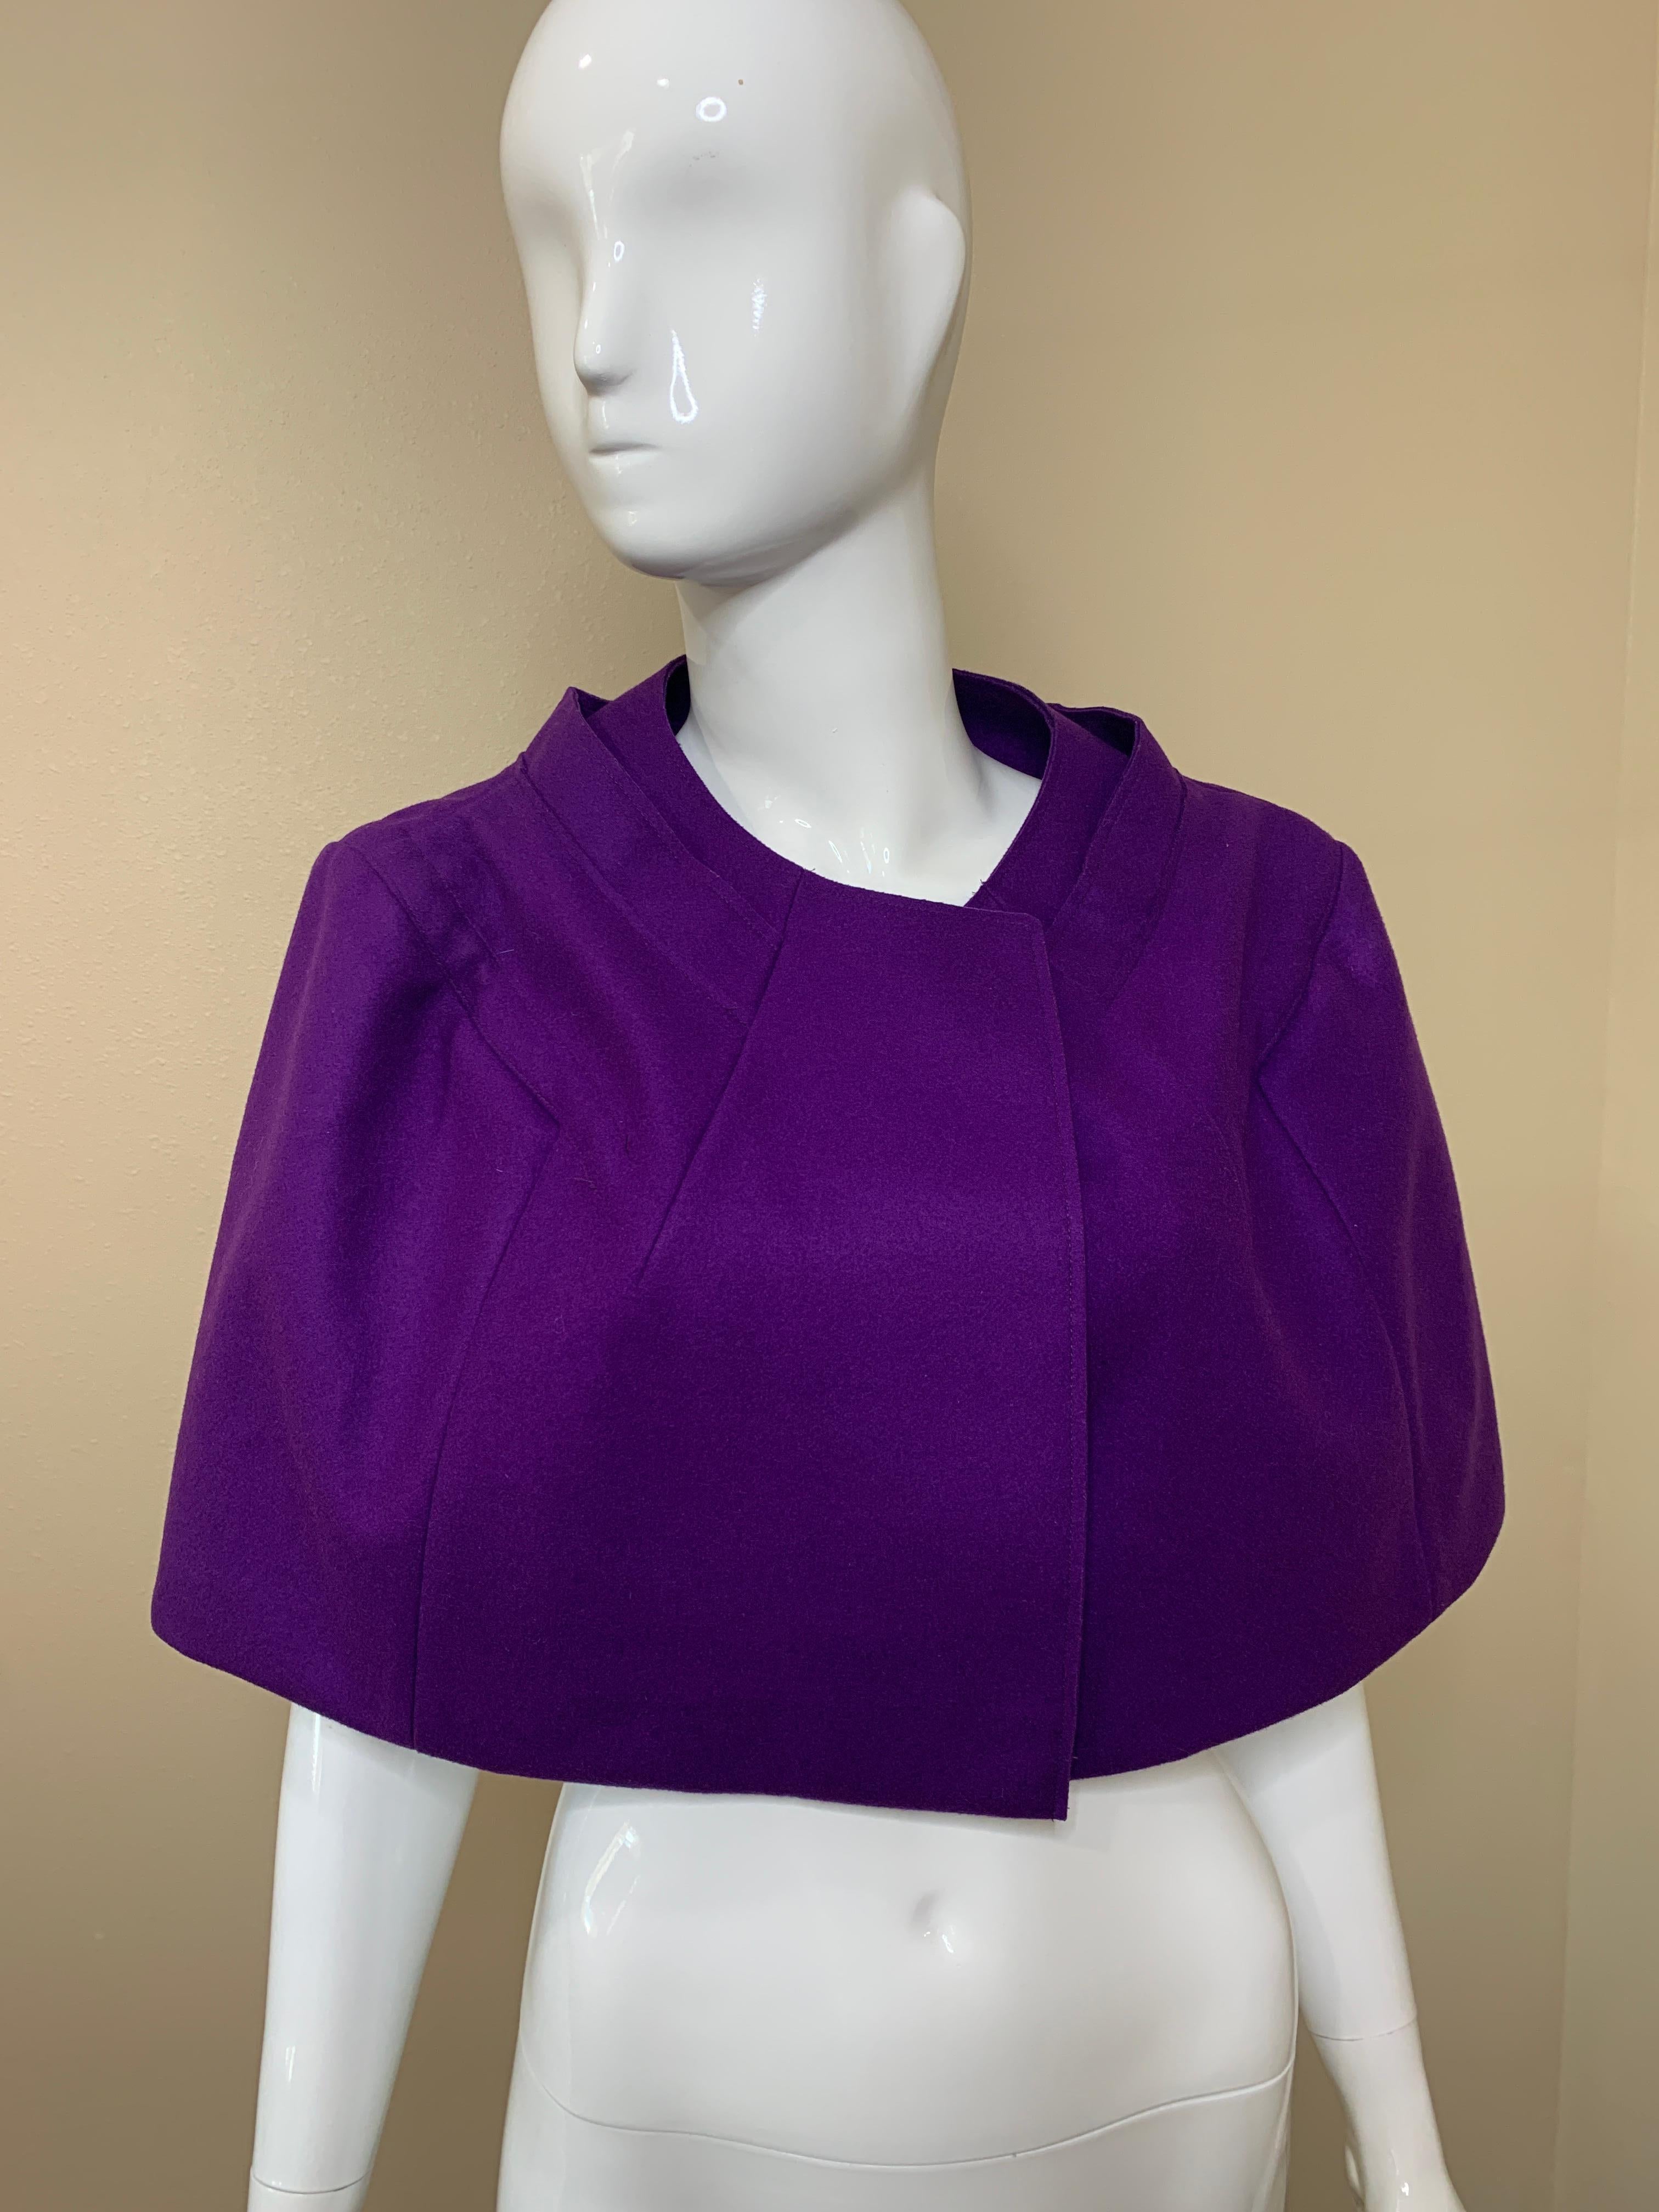 Superschönes und schickes lila Cape von Marni. Nie getragen, mit Etiketten versehen. 
Perfekt über einem Kleid oder einem formellen Outfit, um das Outfit zu ergänzen oder Ihre Schultern warm zu halten. 
Hat eine schöne Krawatte auf der Innenseite zu